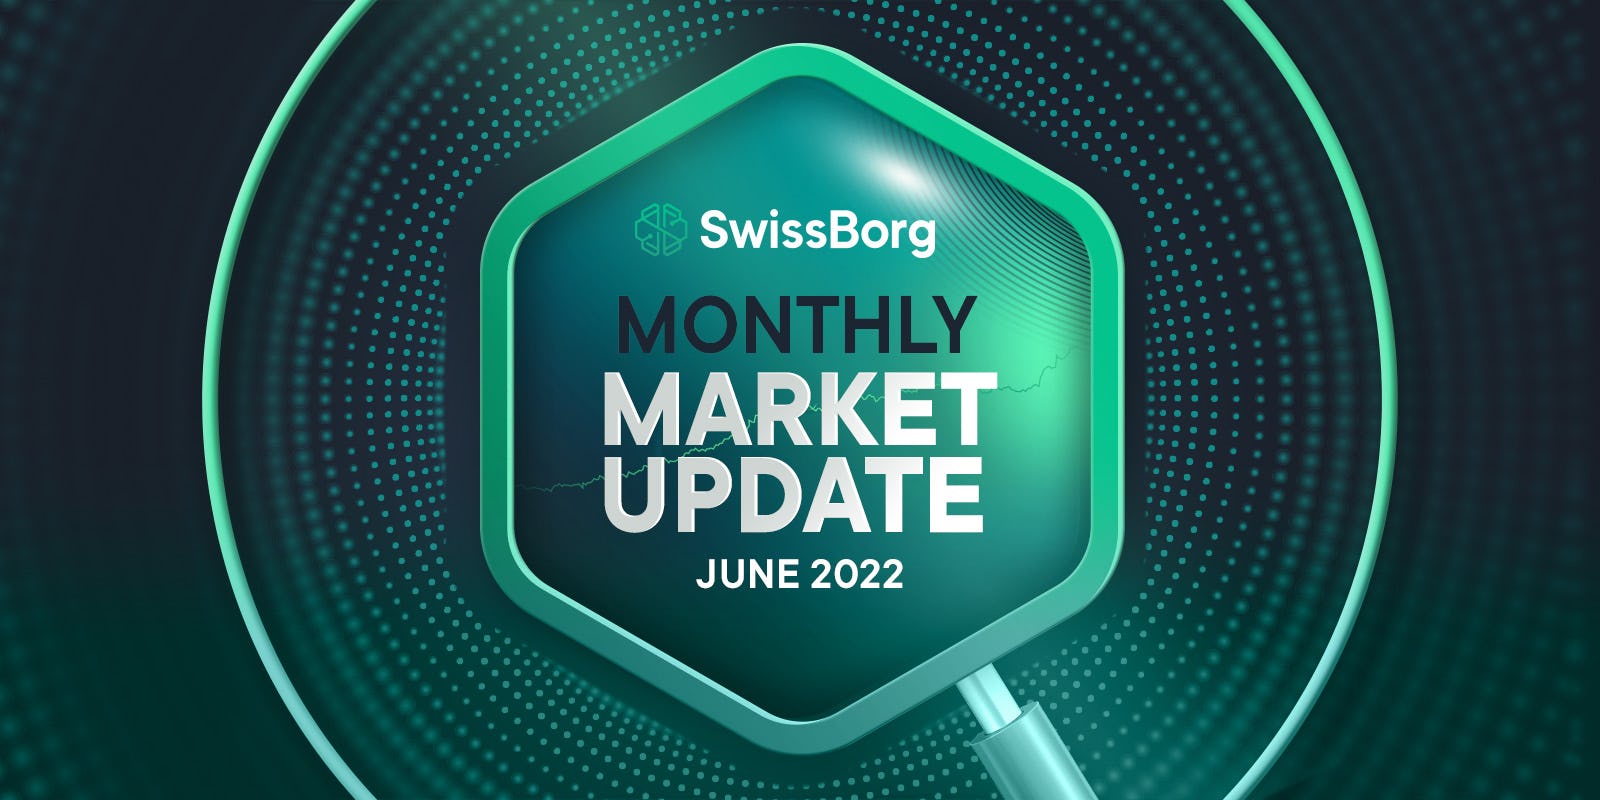 The SwissBorg Monthly Market Update June 2022